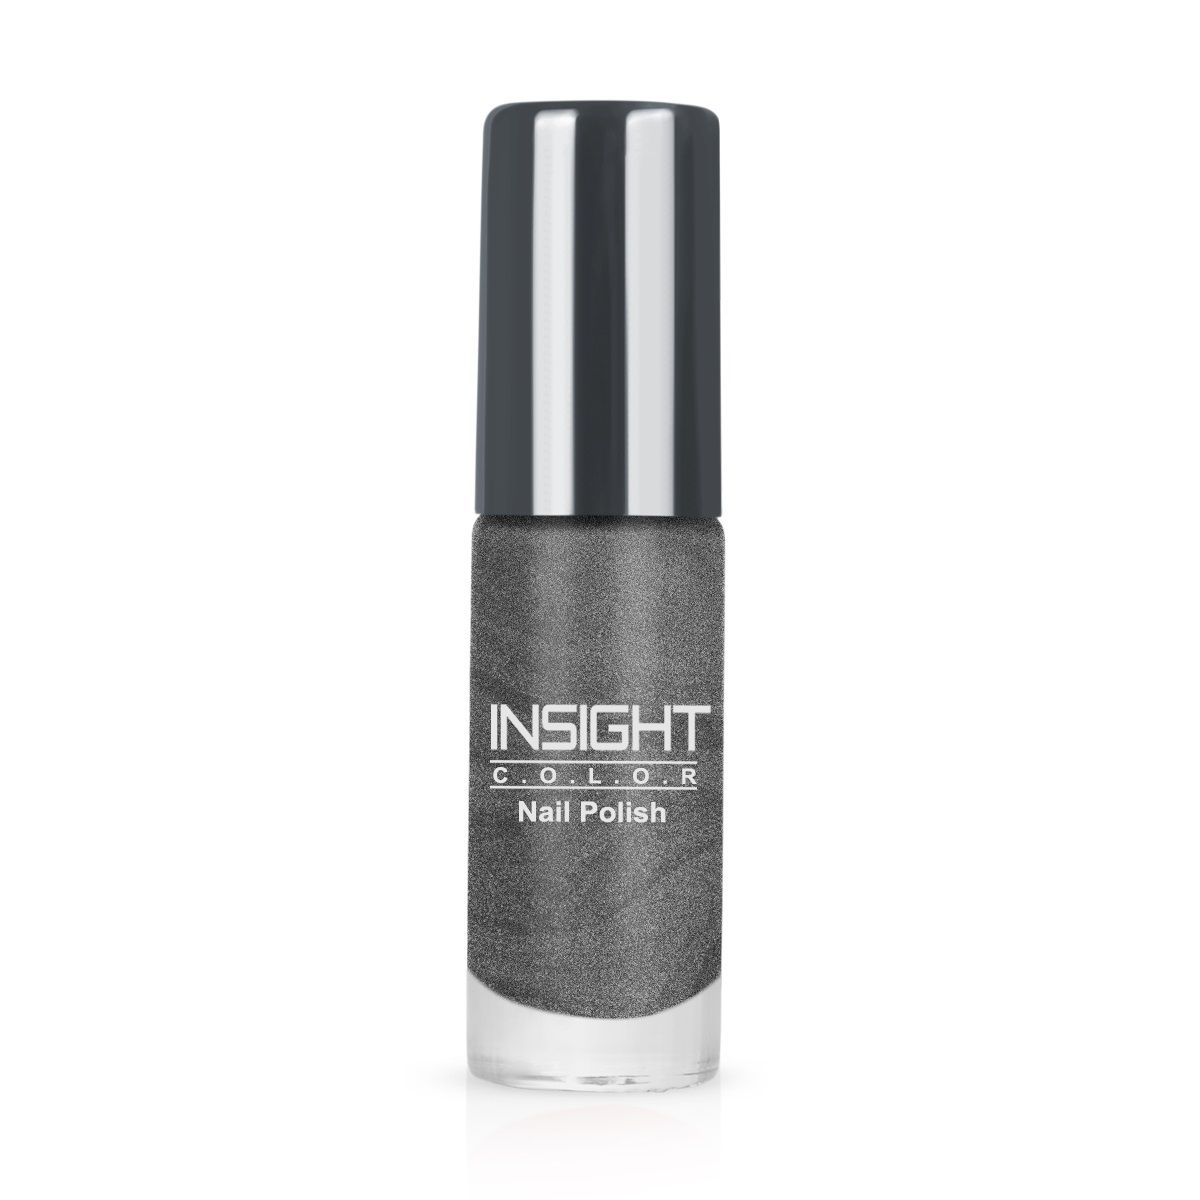 Insight Cosmetics Nail Polish - 12: Buy Insight Cosmetics Nail Polish ...